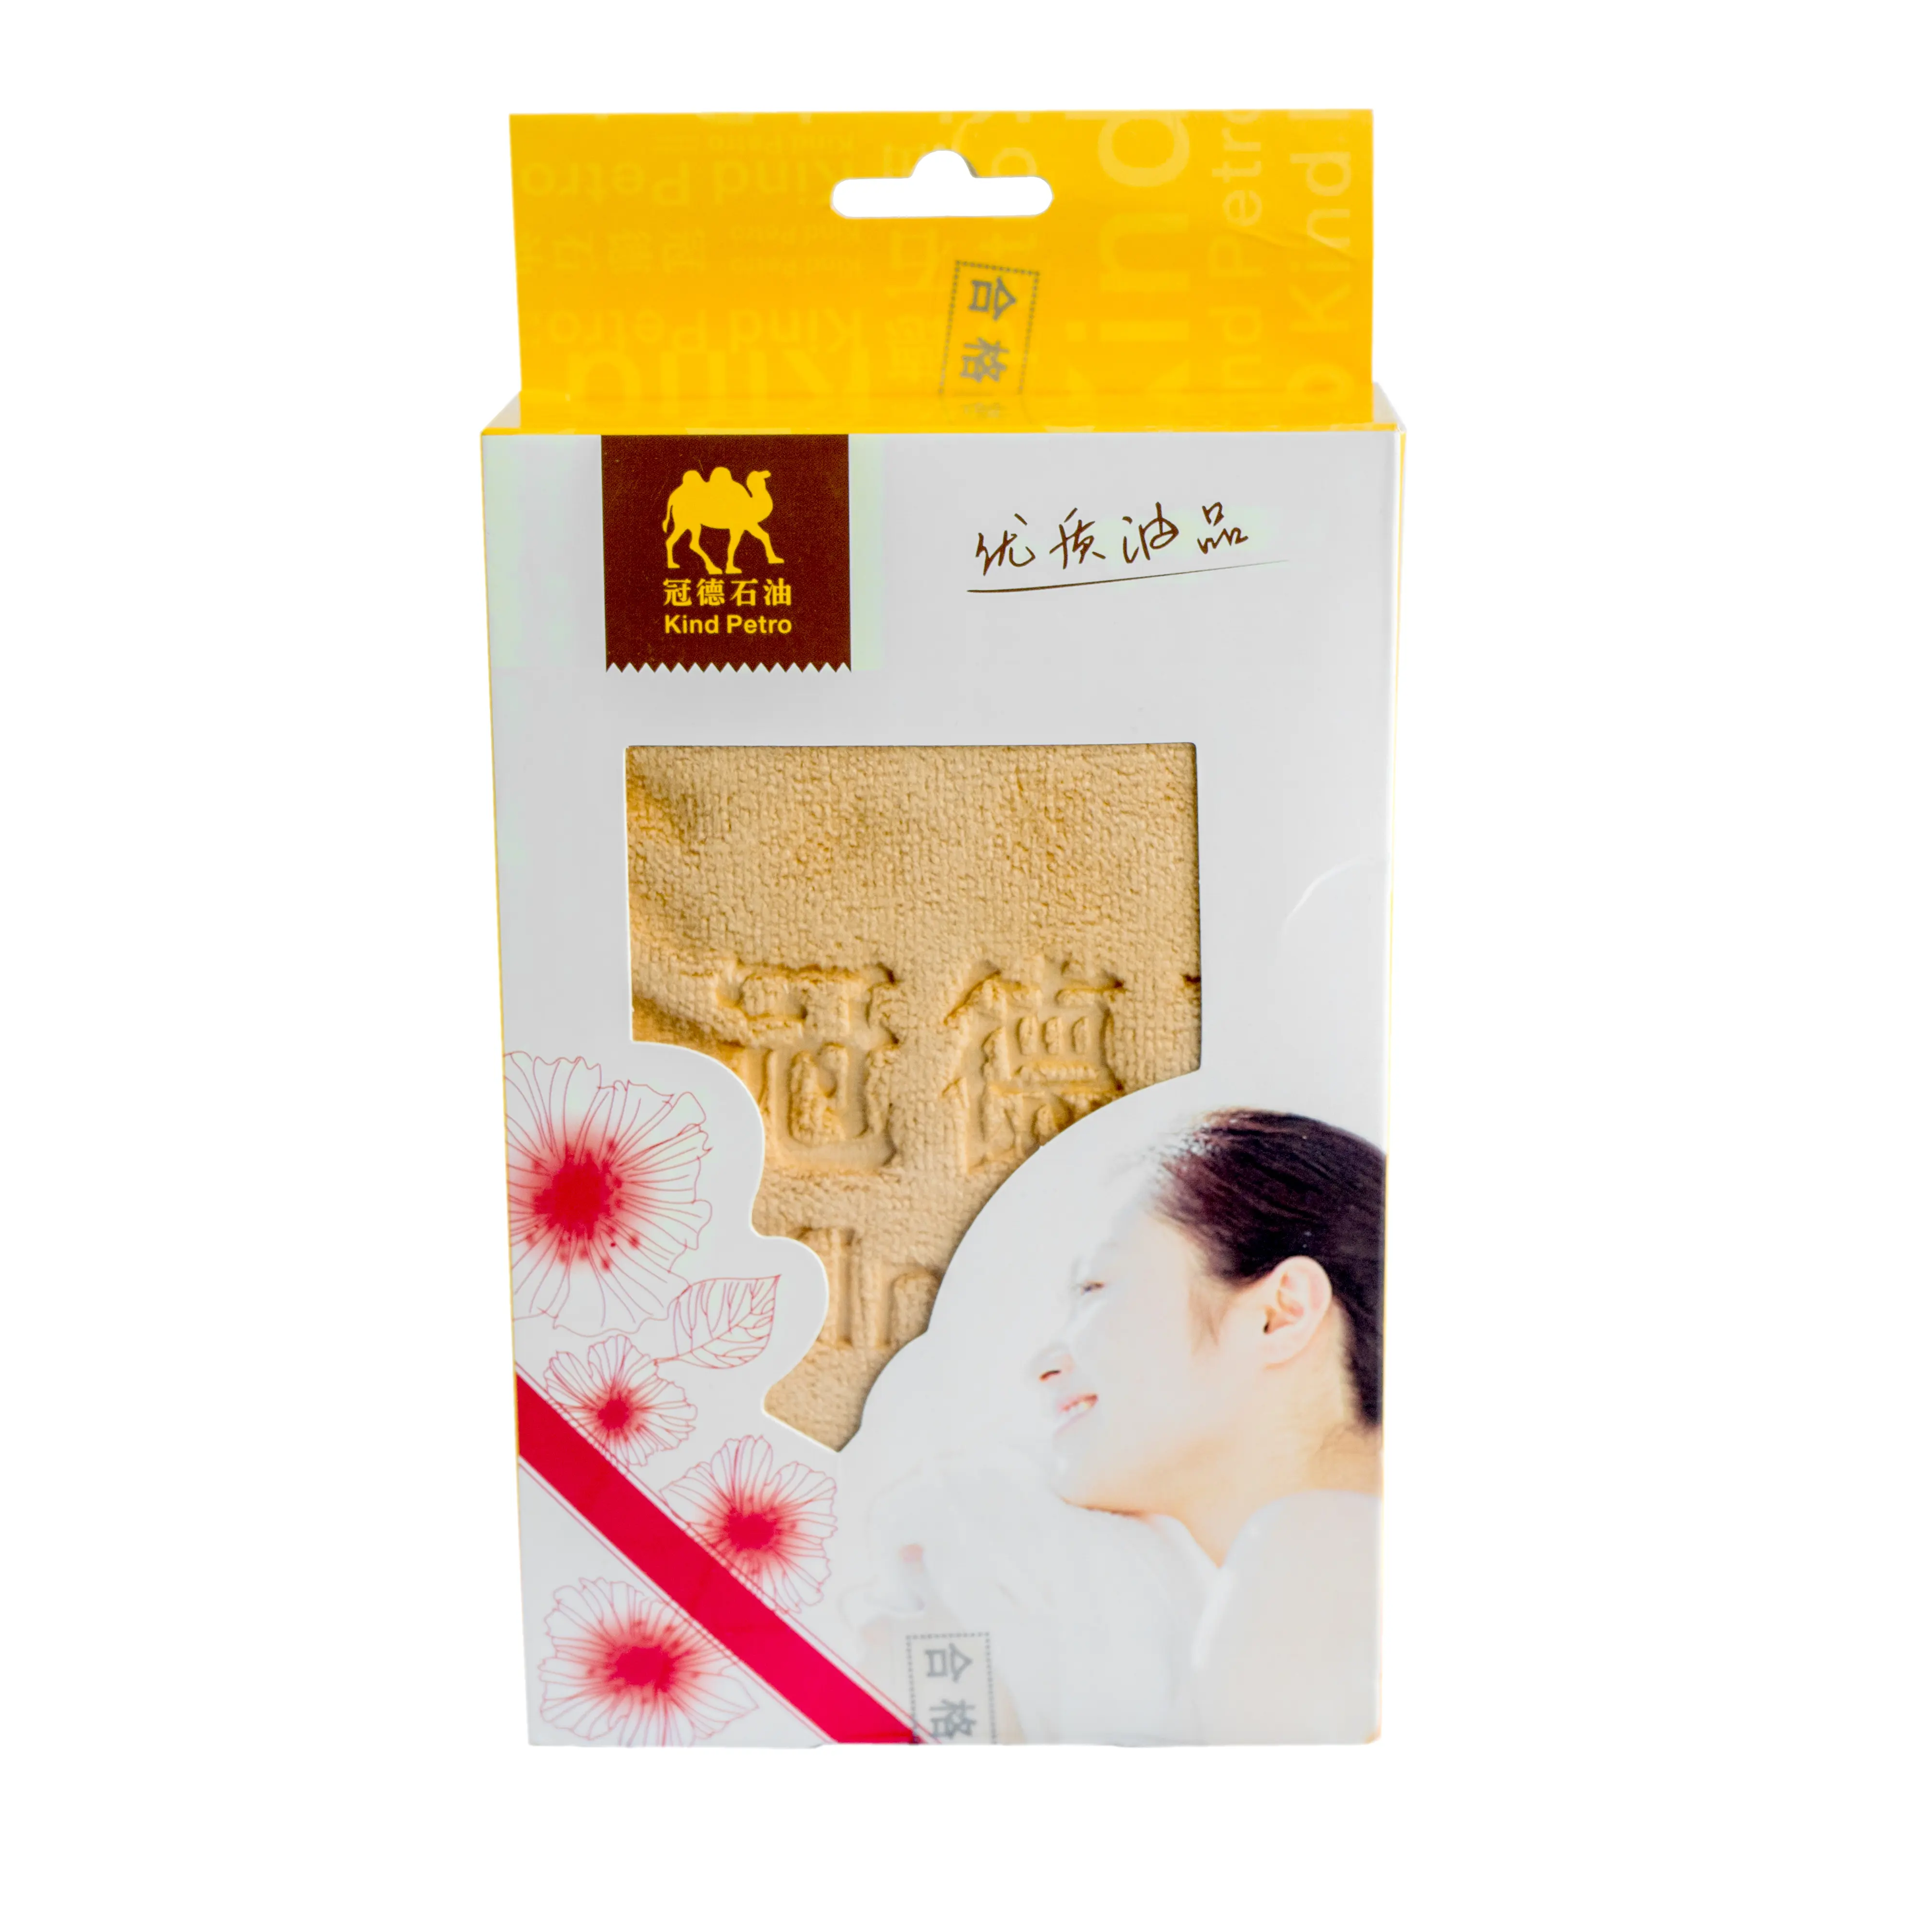 Atacado novo 2019 trending produto toalha descartável personalizado spa cabelo toalha taobao caixas de embalagem caixa de presente pequena para venda